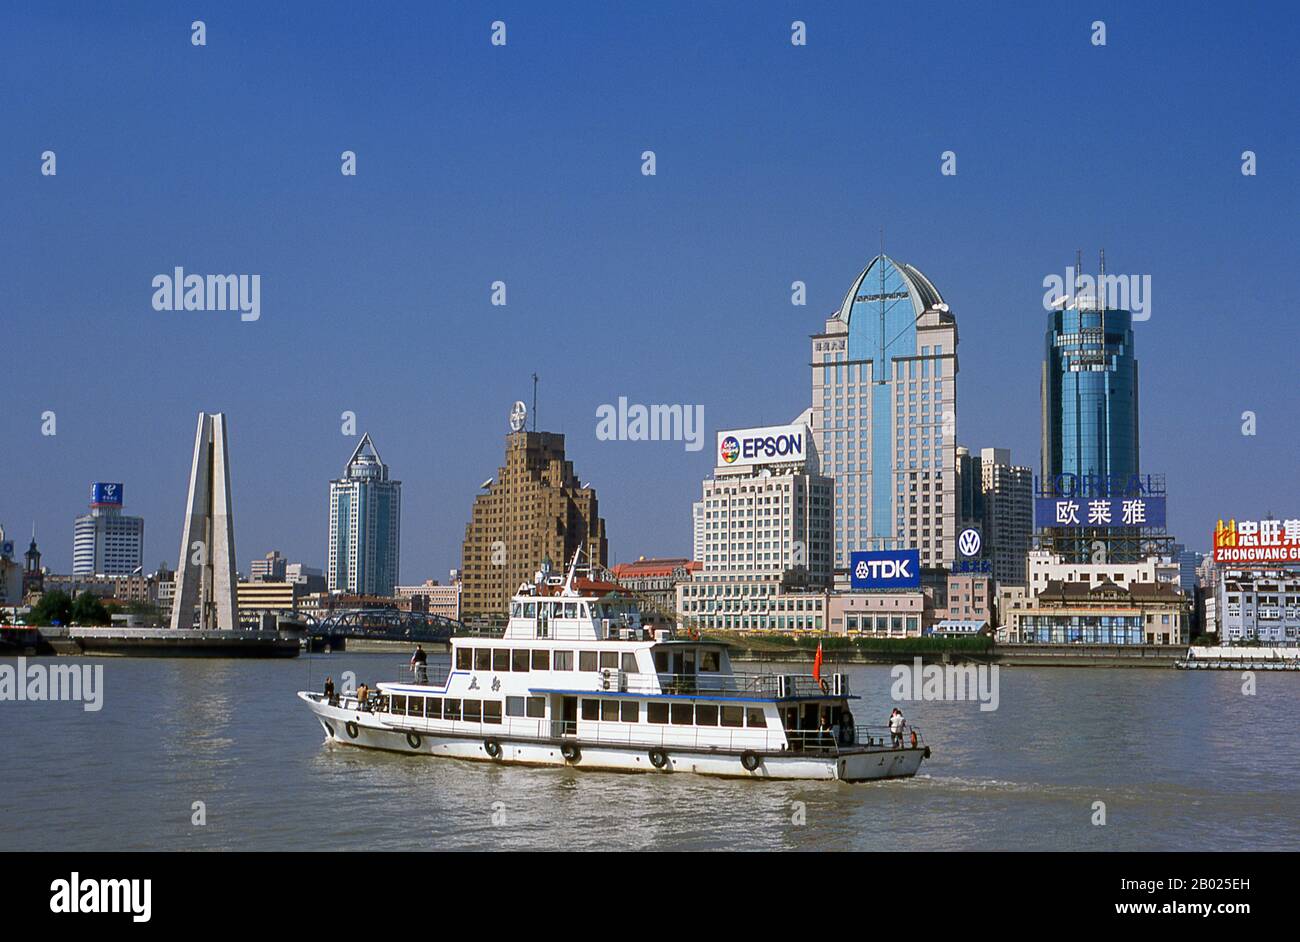 Shangai comenzó la vida como un pueblo de pescadores, y más tarde como un  puerto que recibía mercancías transportadas por el río Yangzi. A partir de  1842, después de la primera Guerra